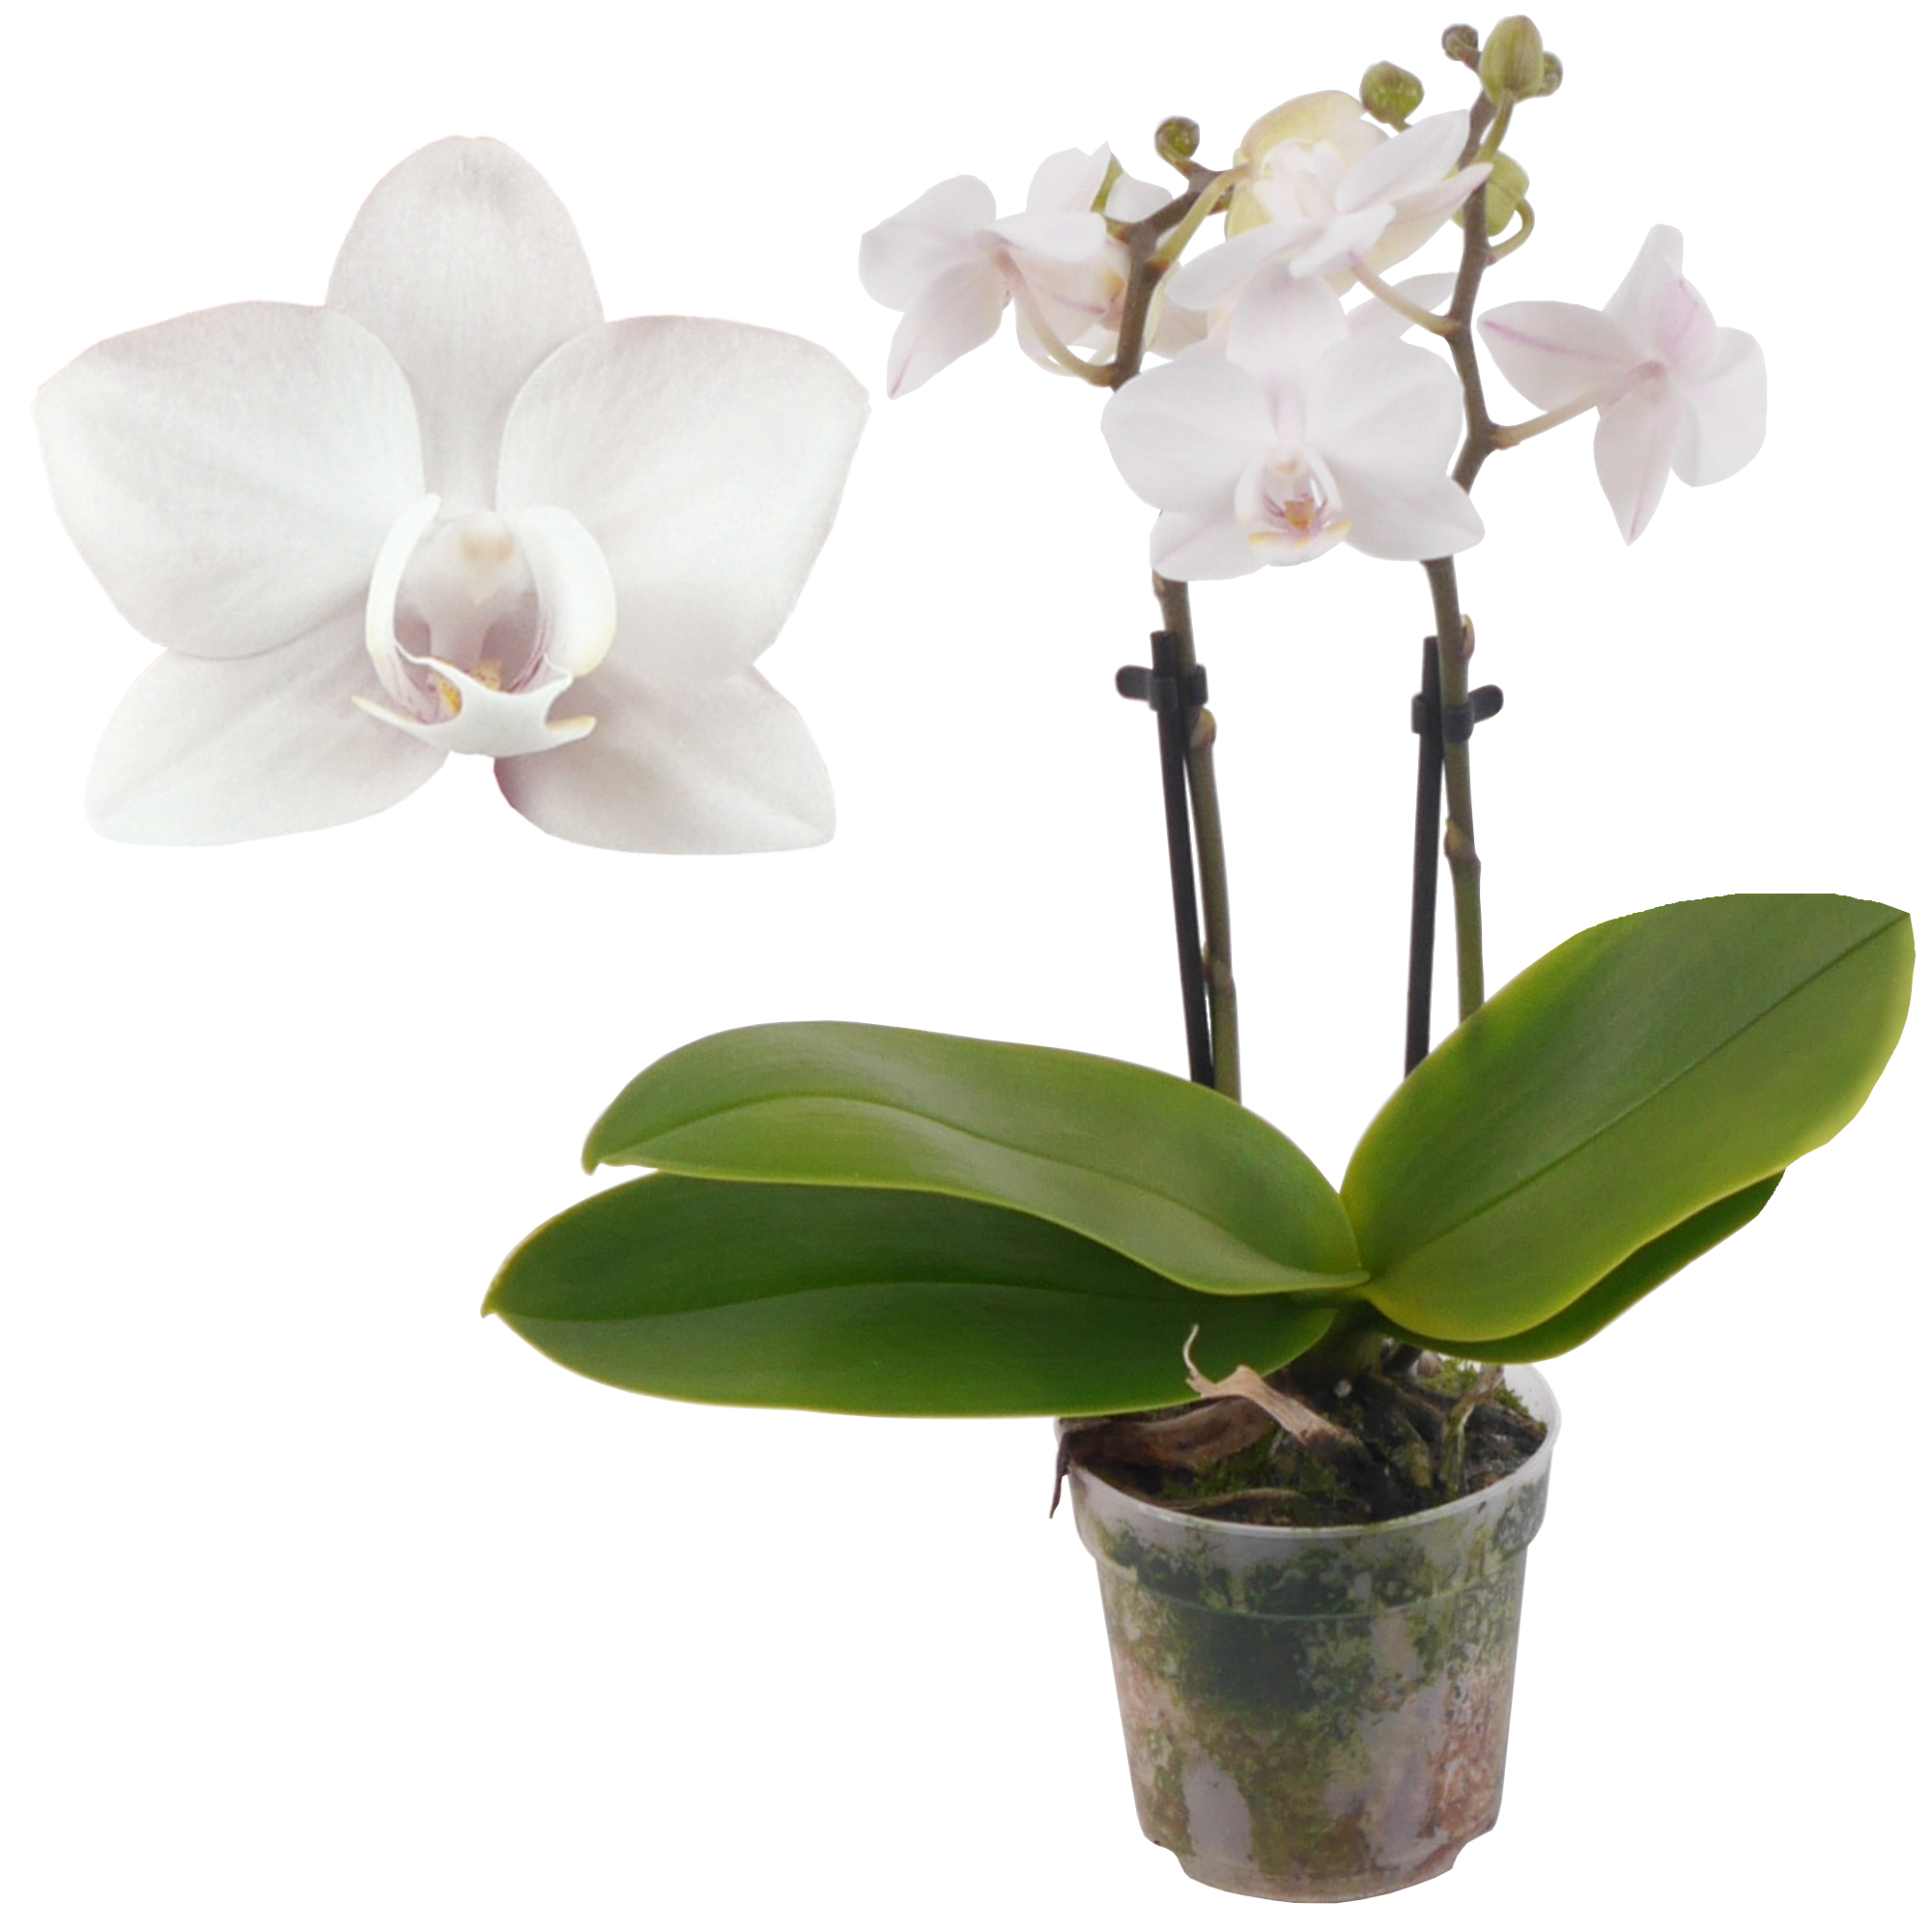 Schmetterlingsorchidee 'Eva' 2 Rispen weiß, 7 cm Topf + product picture